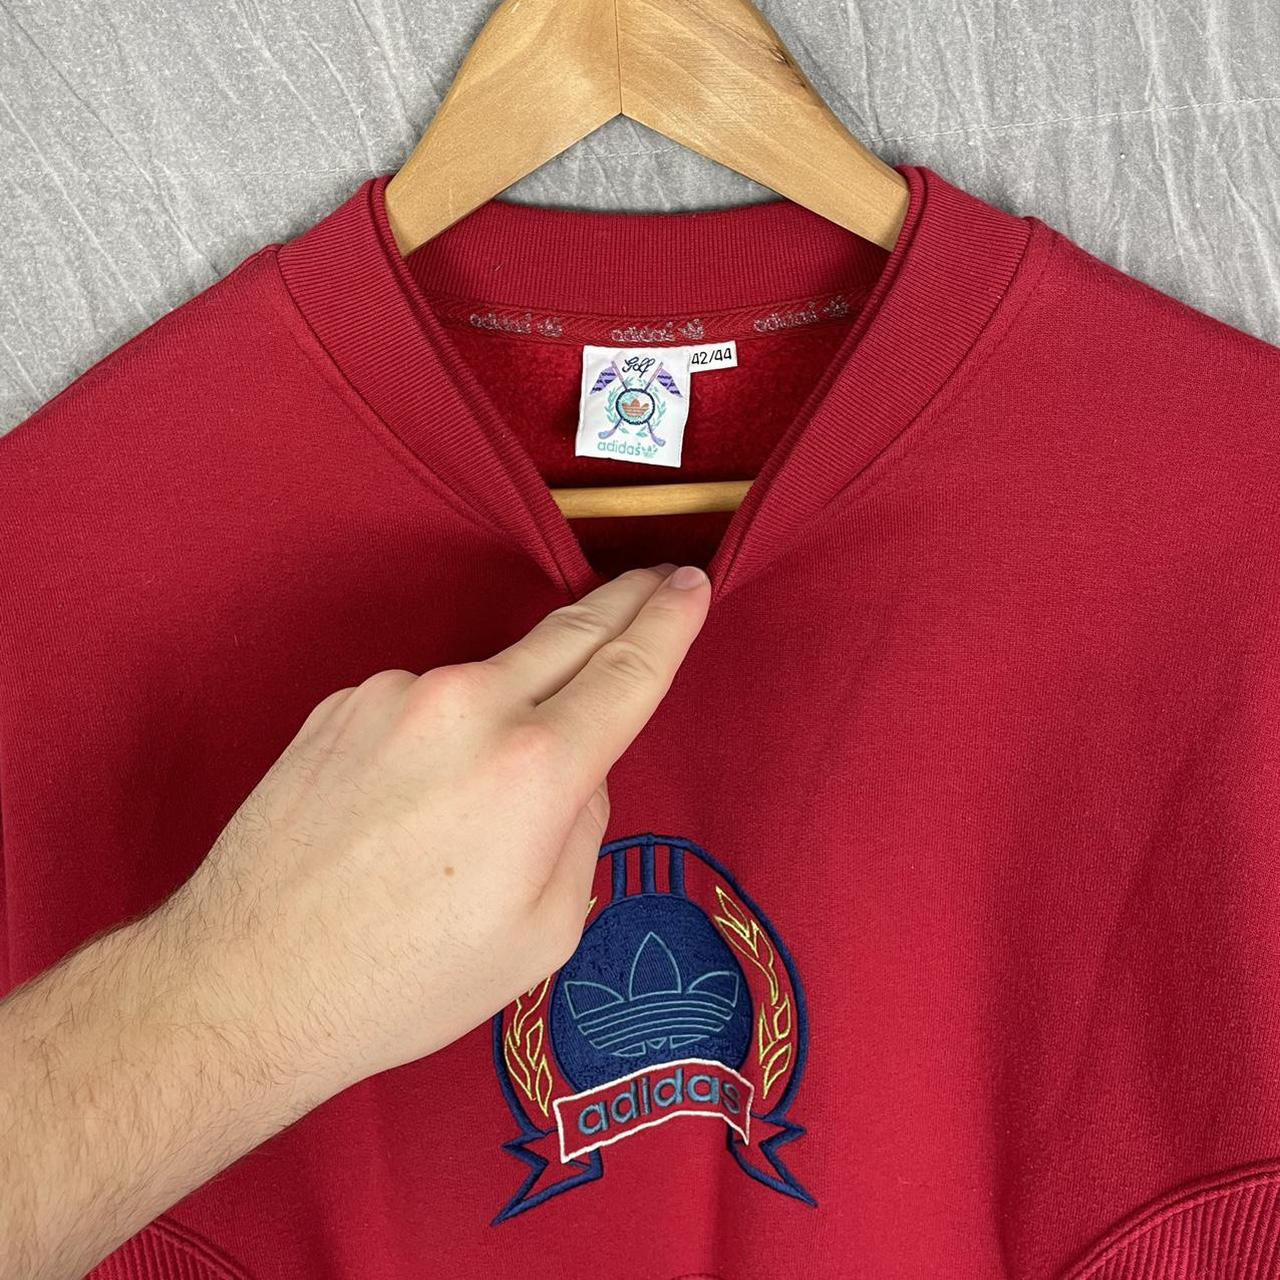 Product Image 3 - Vintage embroidered Adidas sweatshirt 

•FREE